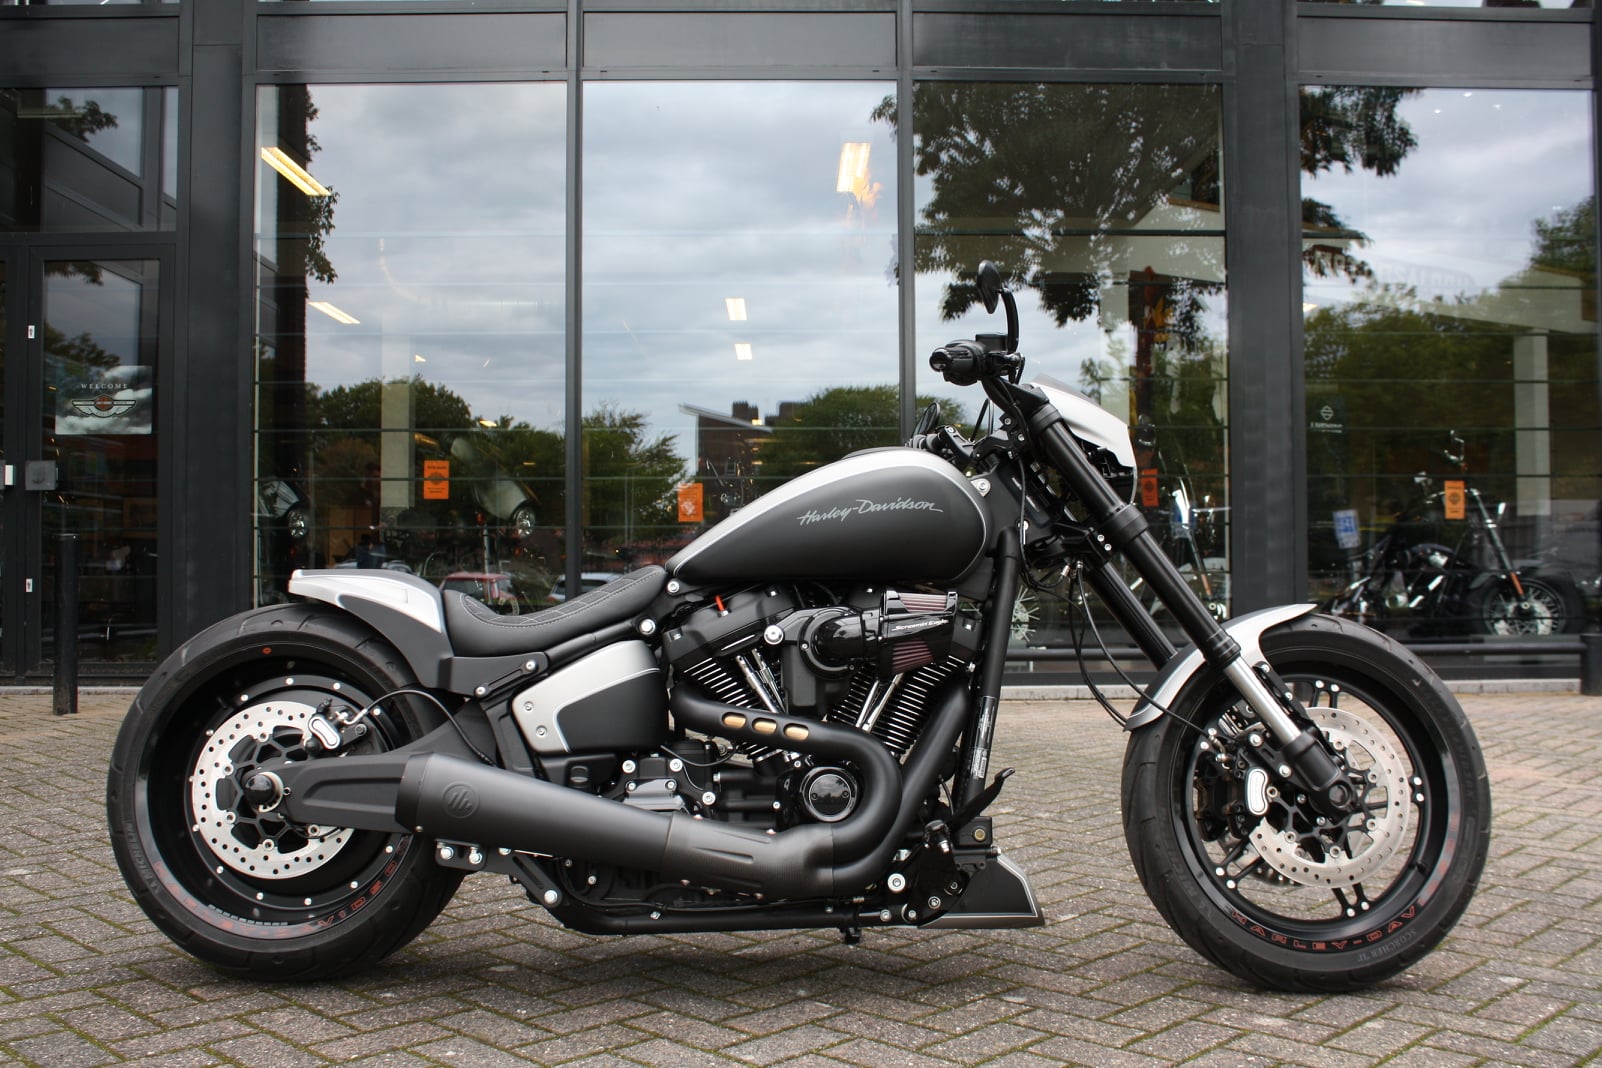 Harley Davidson Motor Saloon Bv Thunderbike